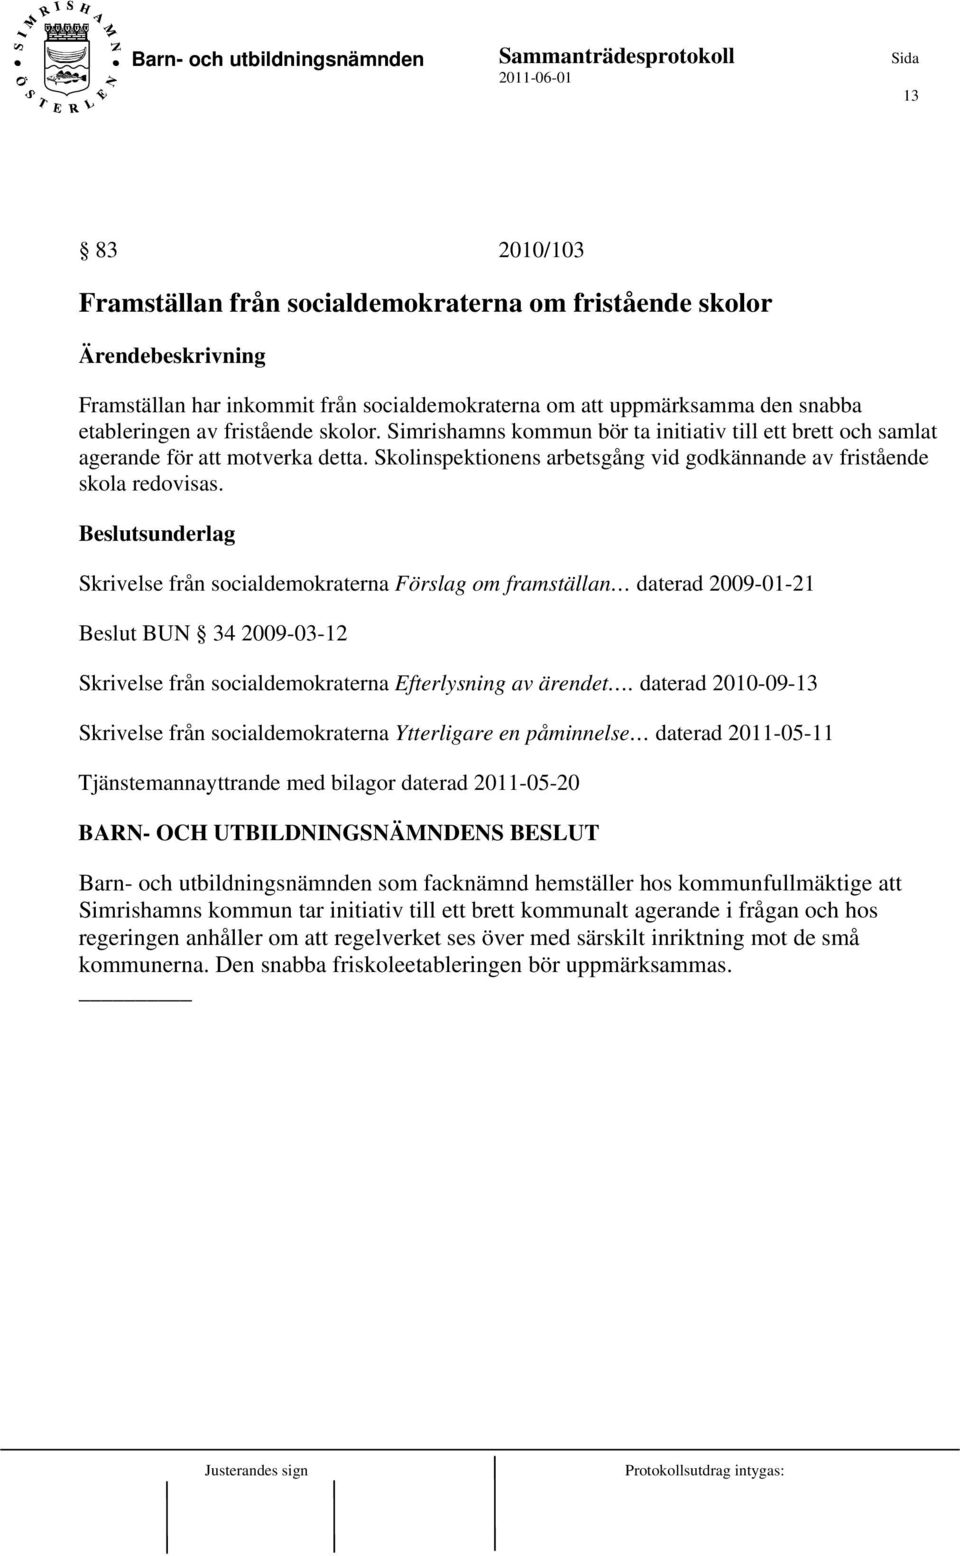 Skrivelse från socialdemokraterna Förslag om framställan daterad 2009-01-21 Beslut BUN 34 2009-03-12 Skrivelse från socialdemokraterna Efterlysning av ärendet.